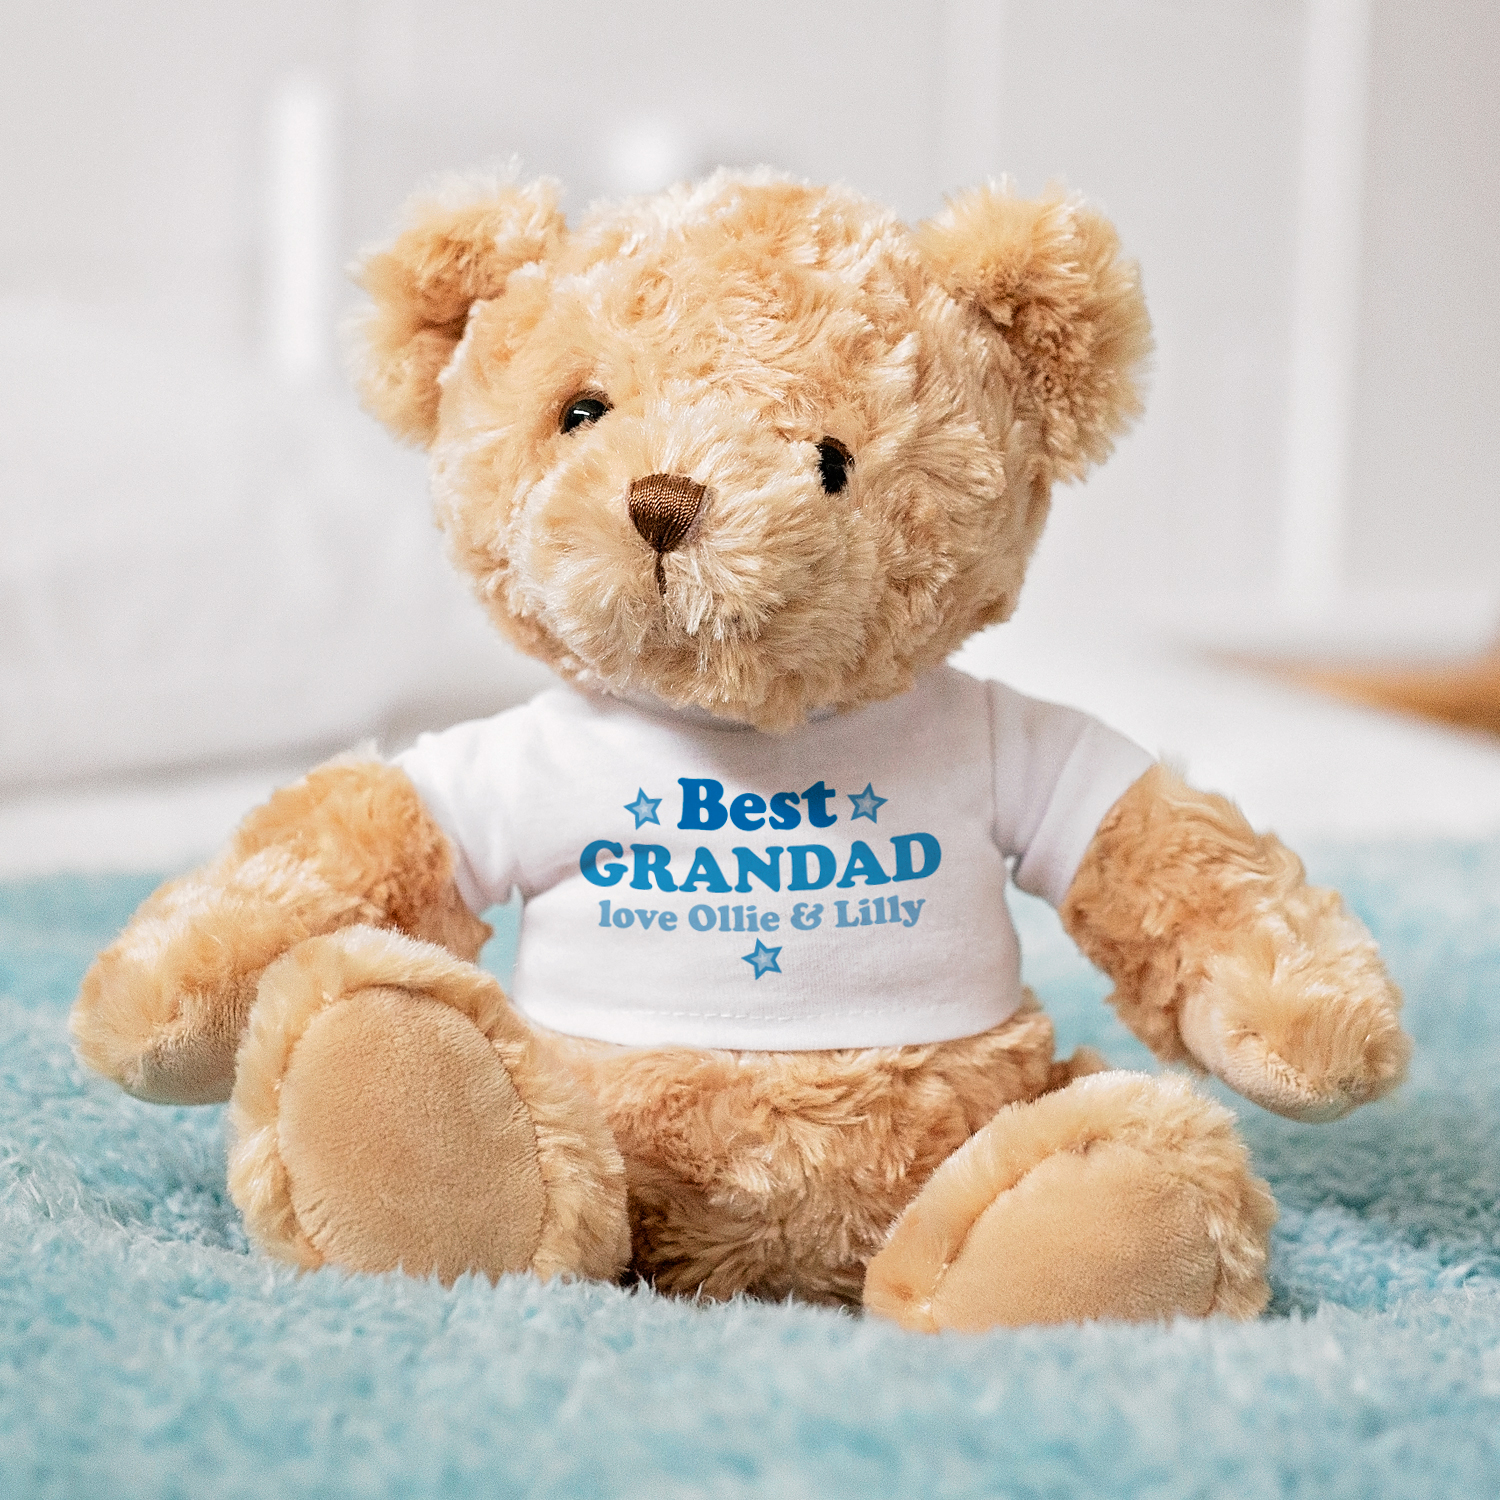 grandad teddy bear